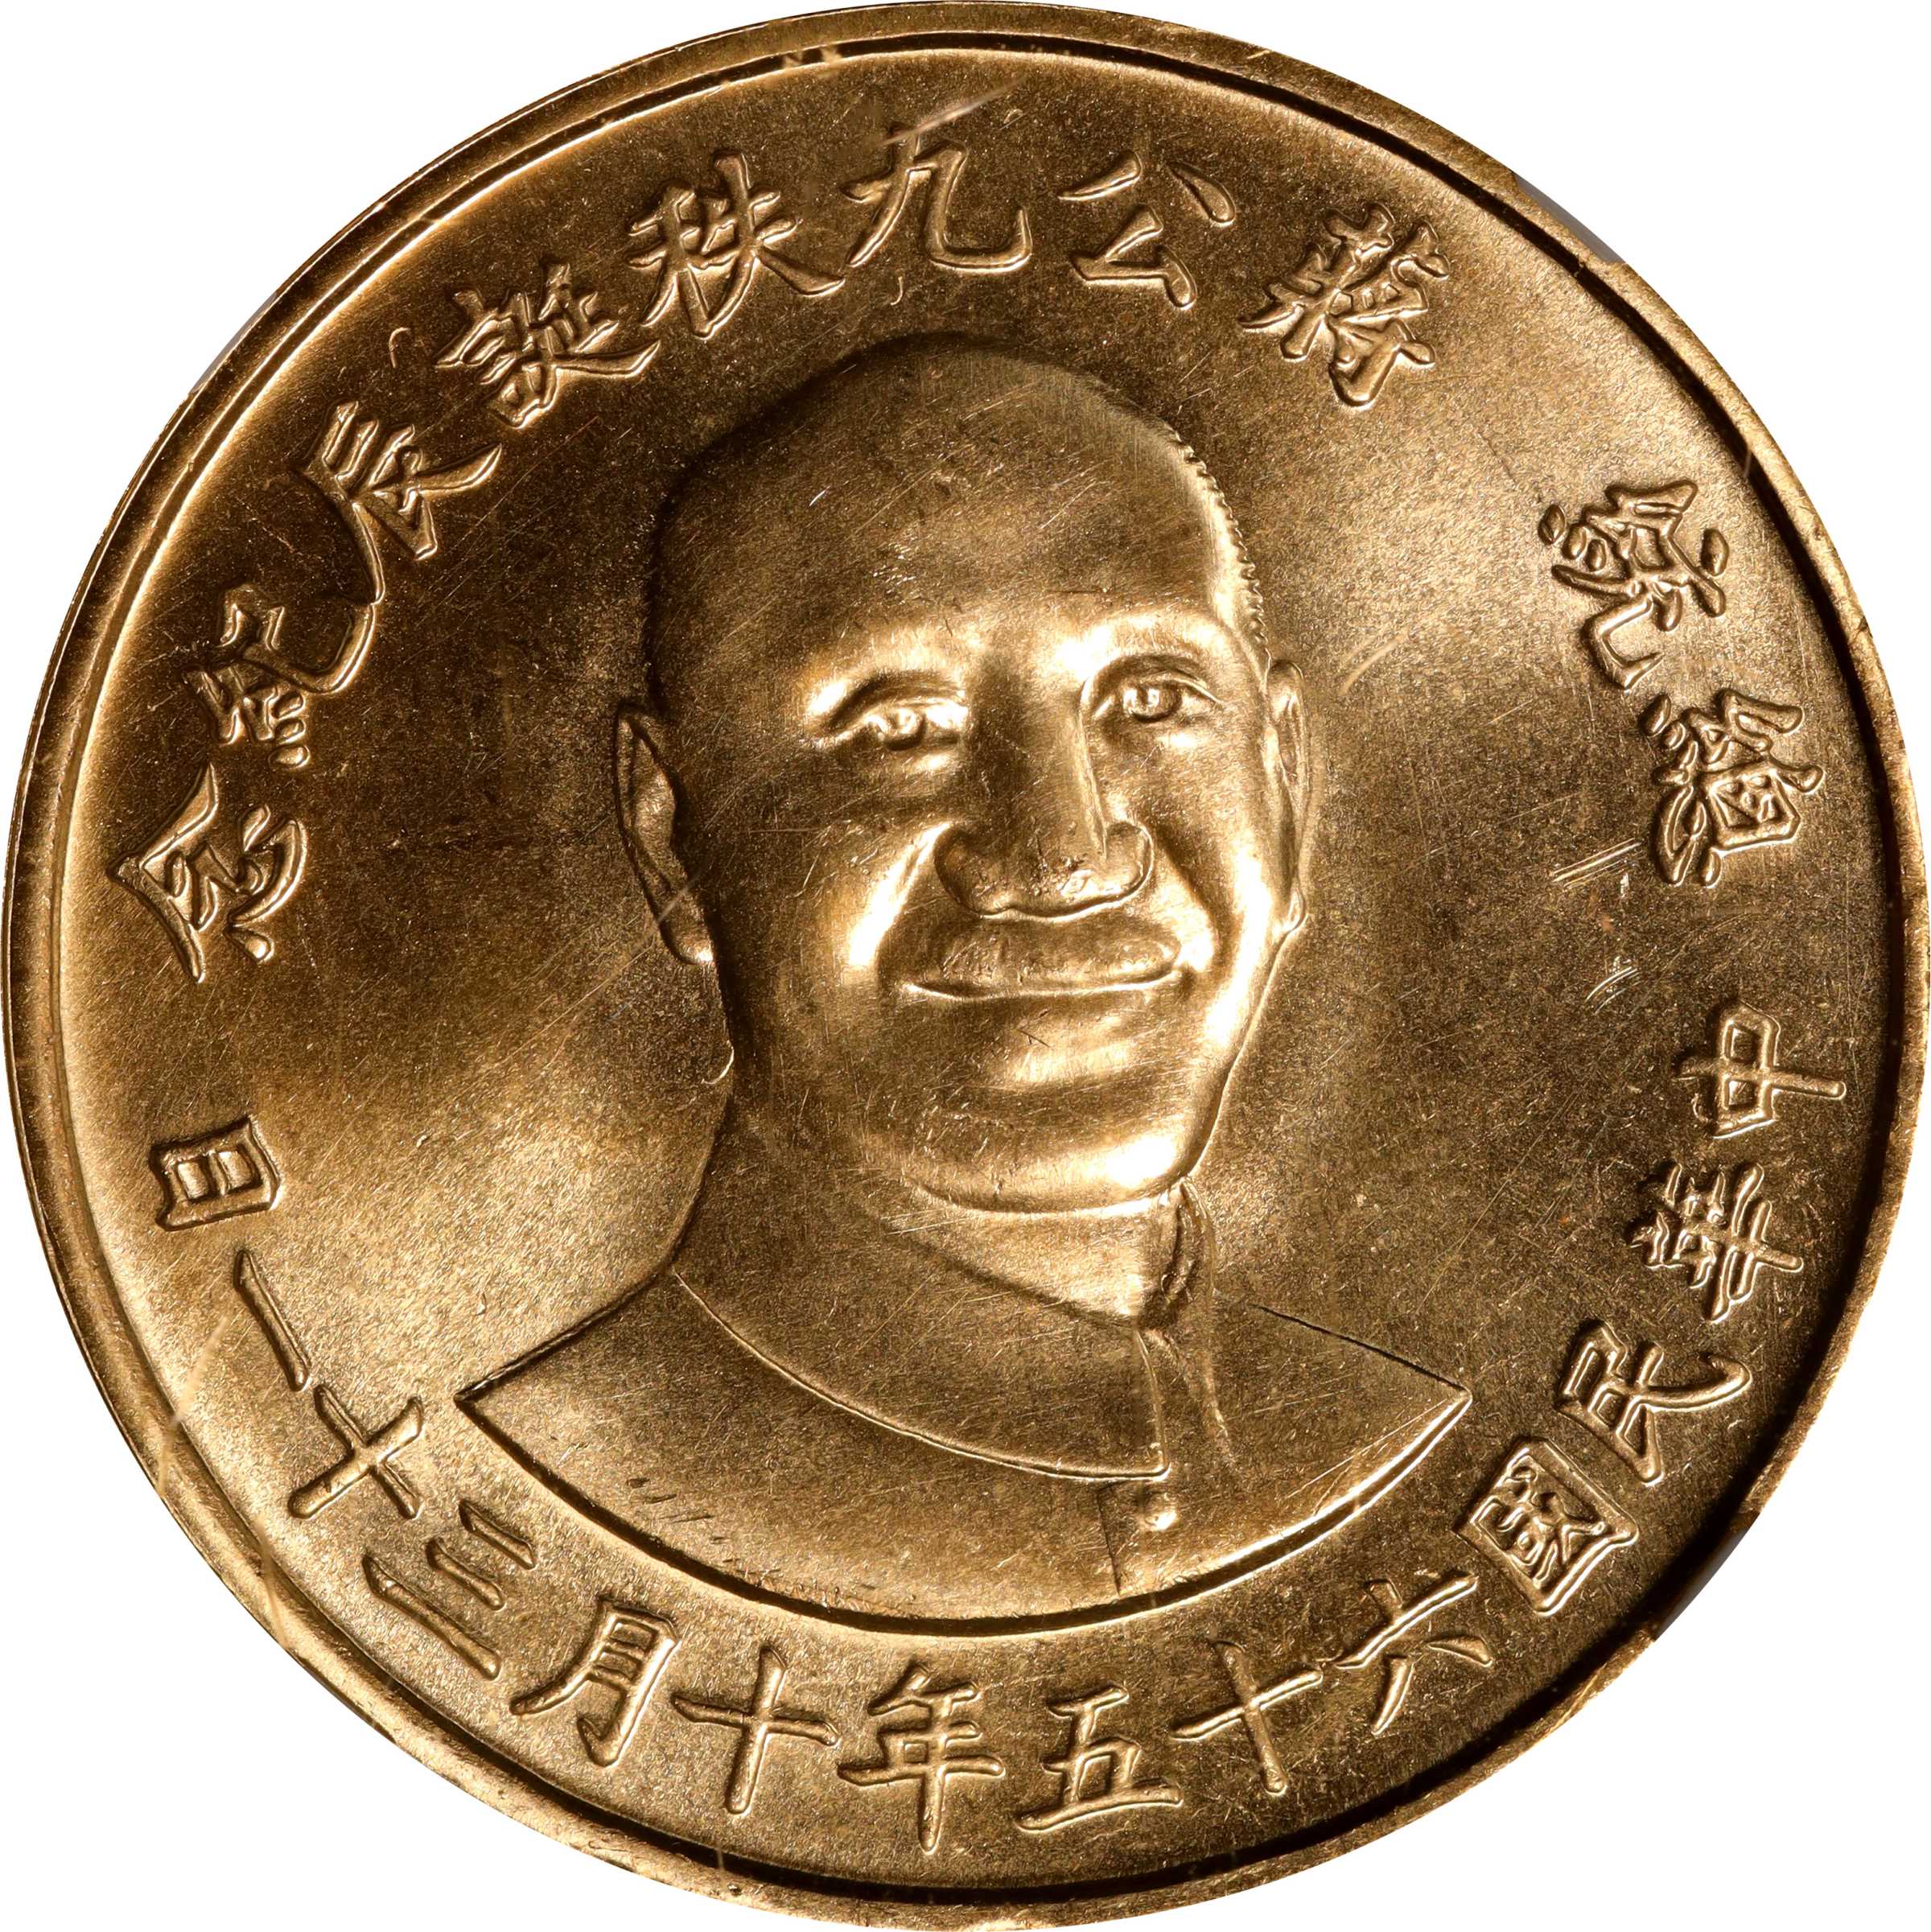 CHINA. Taiwan. 90th Birthday of Chiang Kai-shek Gold Medal (1 oz 